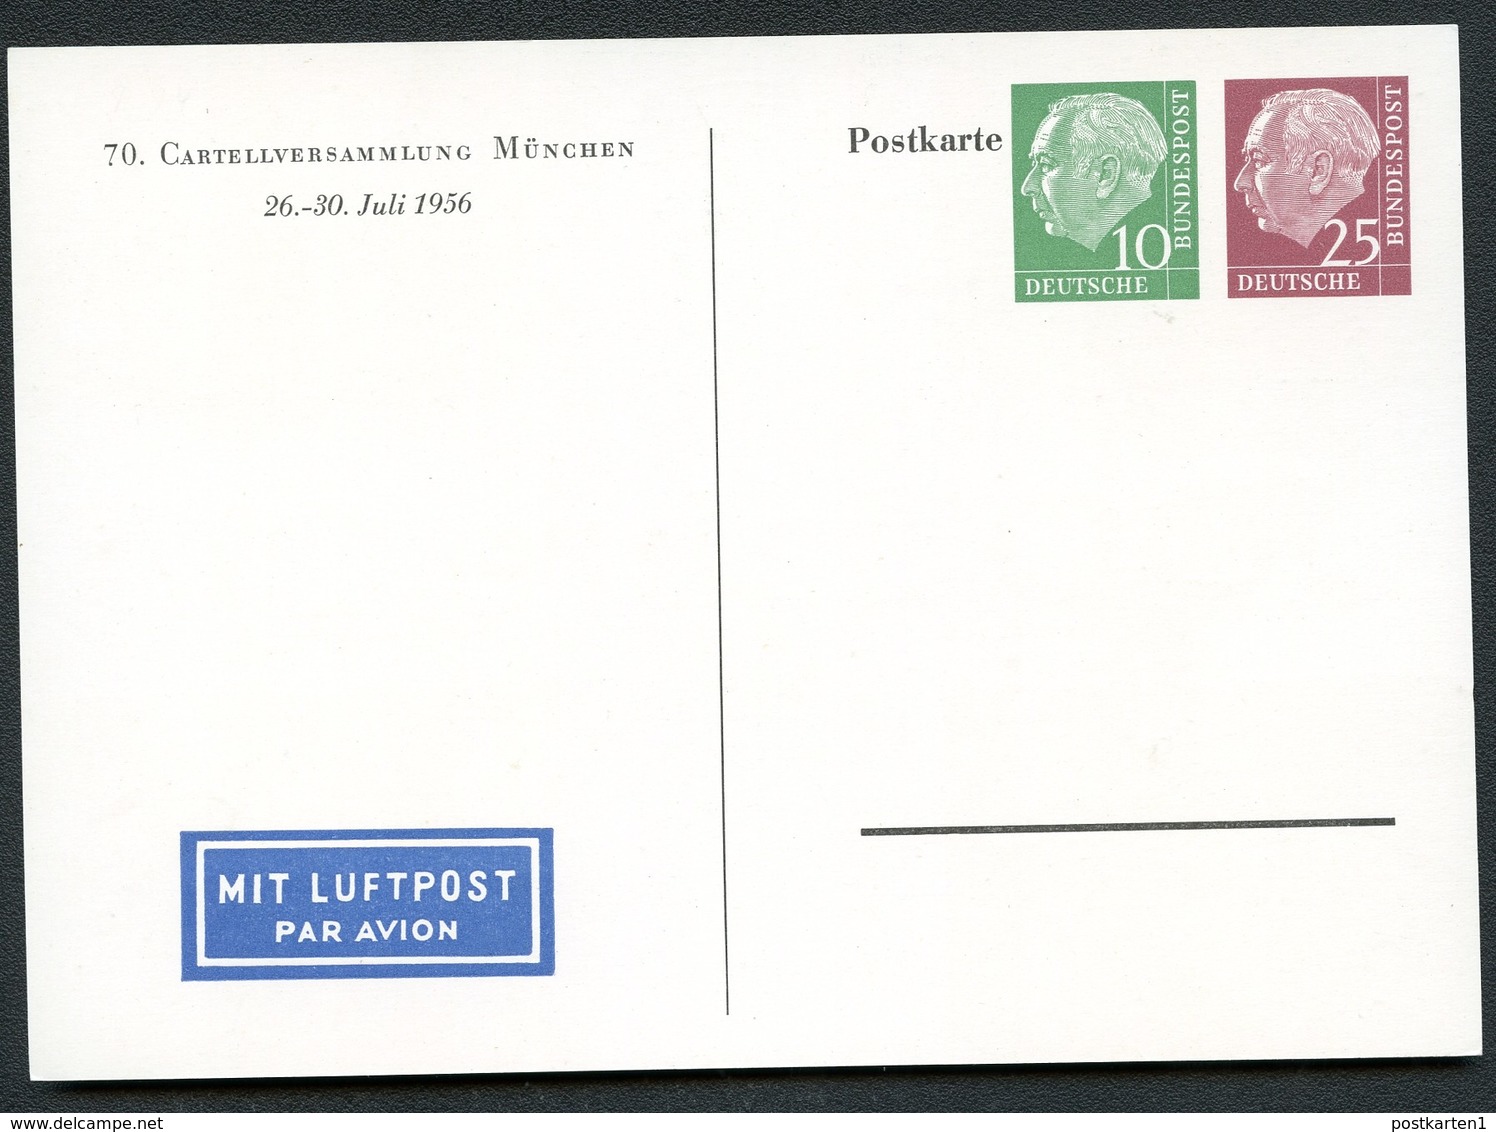 Bund PP15 D2/001-1+2  CARTELLVERSAMMLUNG MÜNCHEN 1956  NGK 44,00€ - Private Postcards - Mint